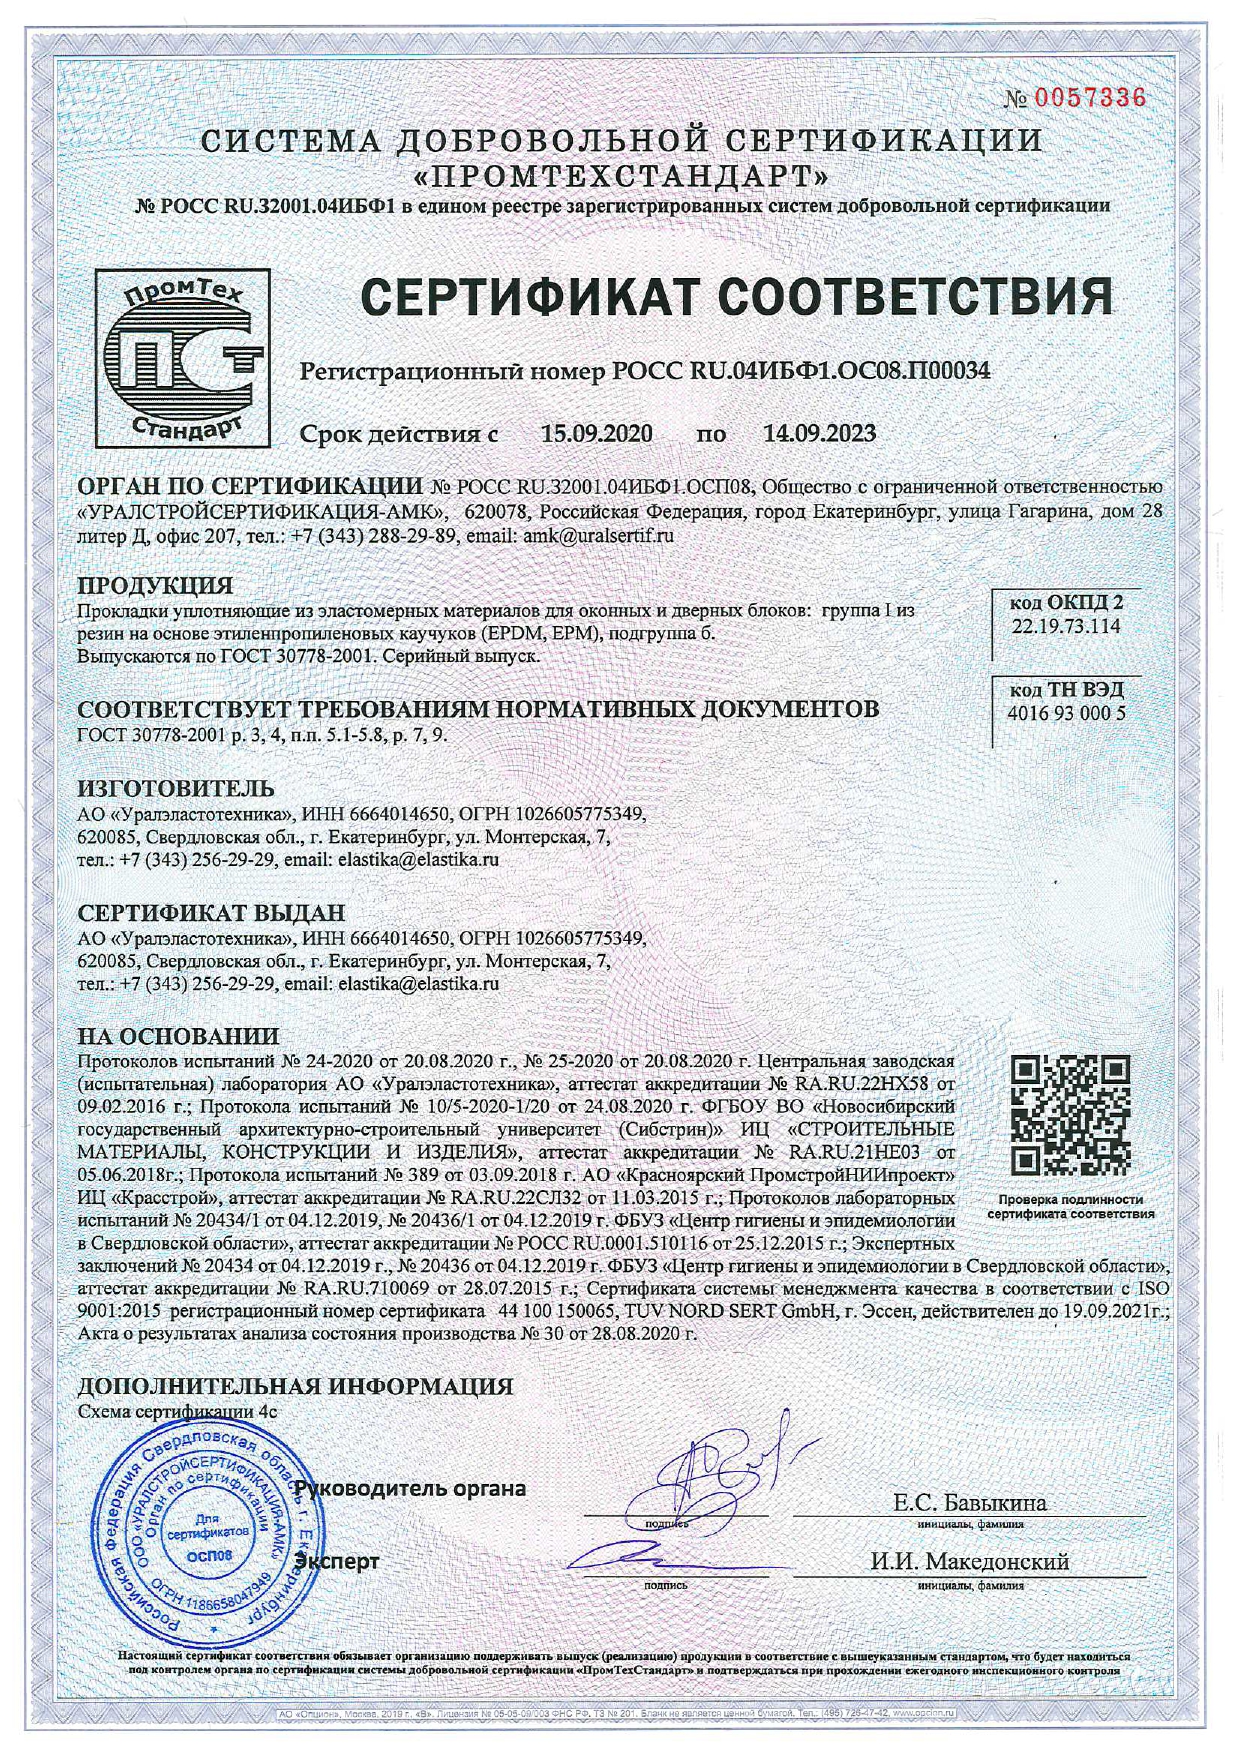 25129 82 статус. Сертификат на прокладки уплотняющие из эластомерных материалов. Уплотнитель ГОСТ 30778-2001 сертификат соответствия на продукцию. Импрегнированный брус сертификат. Сертификат грунтовка ГФ-021 ГОСТ 25129-82 серая.